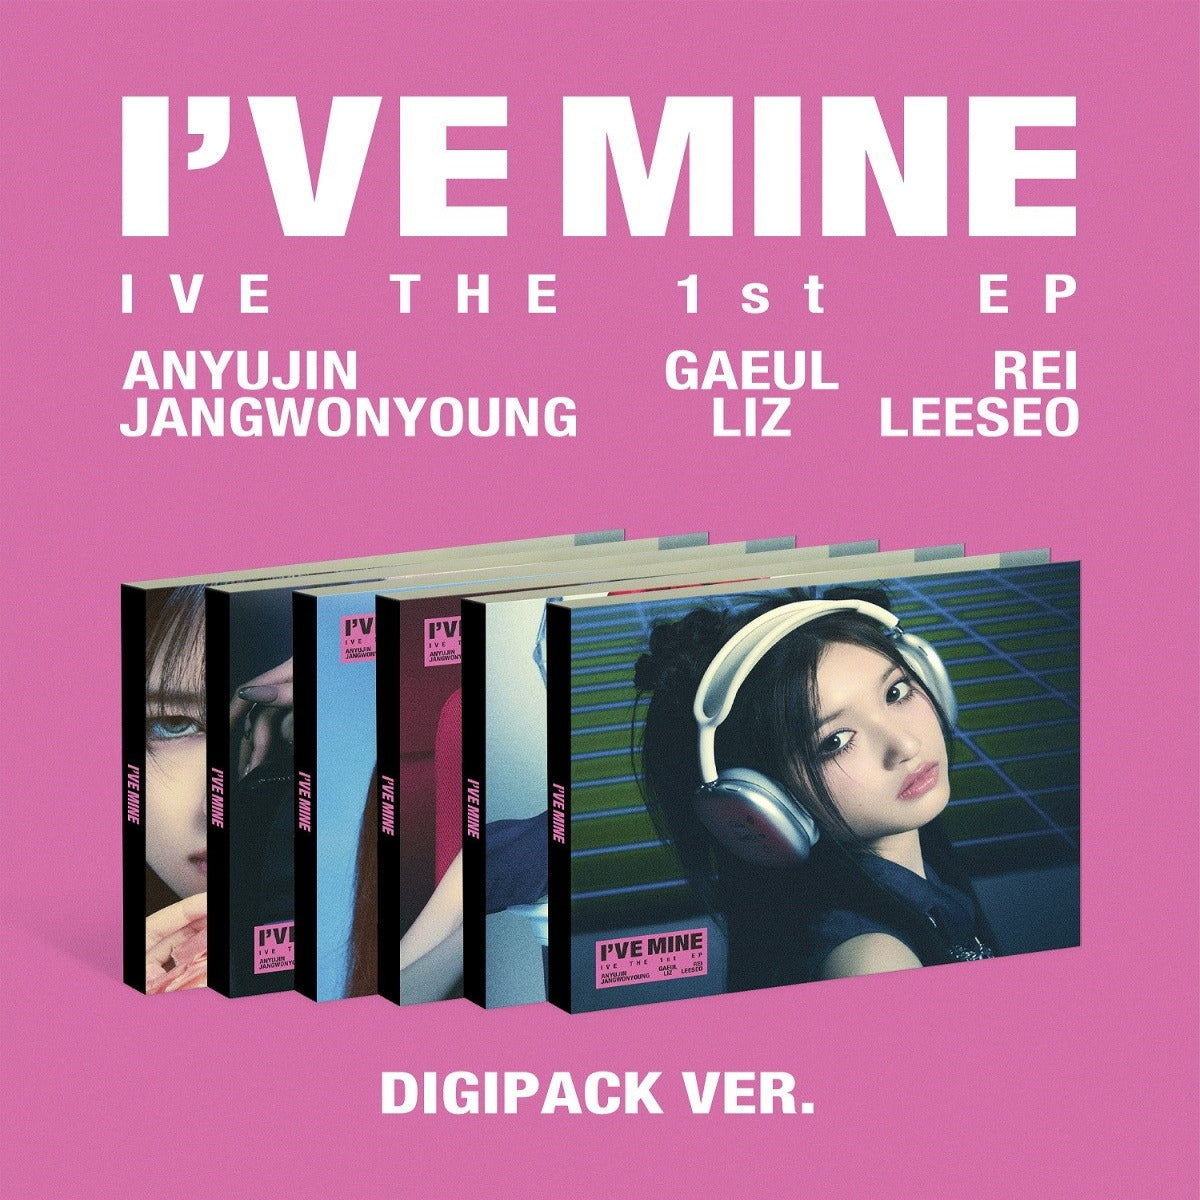 IVE EP Album Vol. 1 - I'VE MINE (Digipack Version) (Limited Edition)